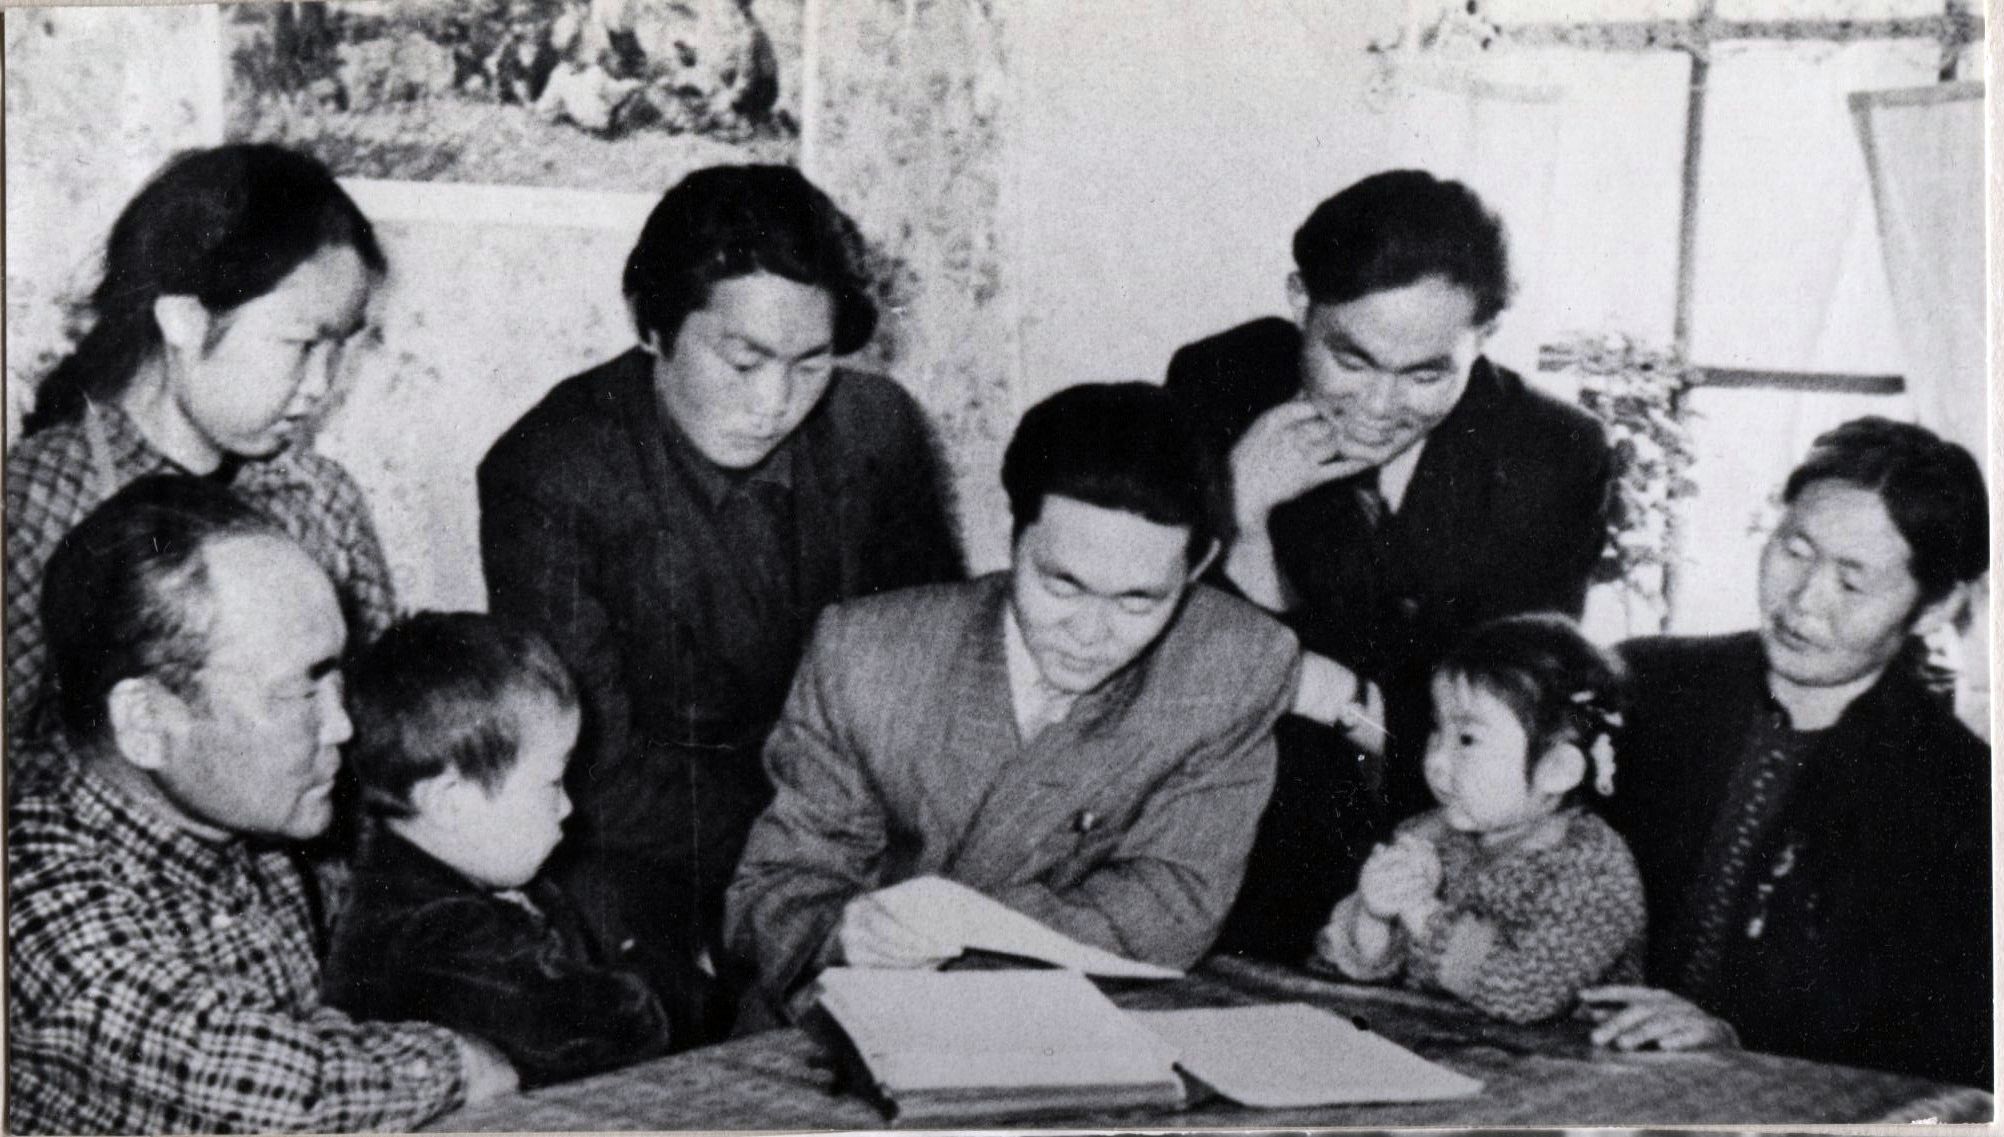 Г. Ходжер с отцом, матерью, братьями и сестрами. Сахалин. 1956 г.